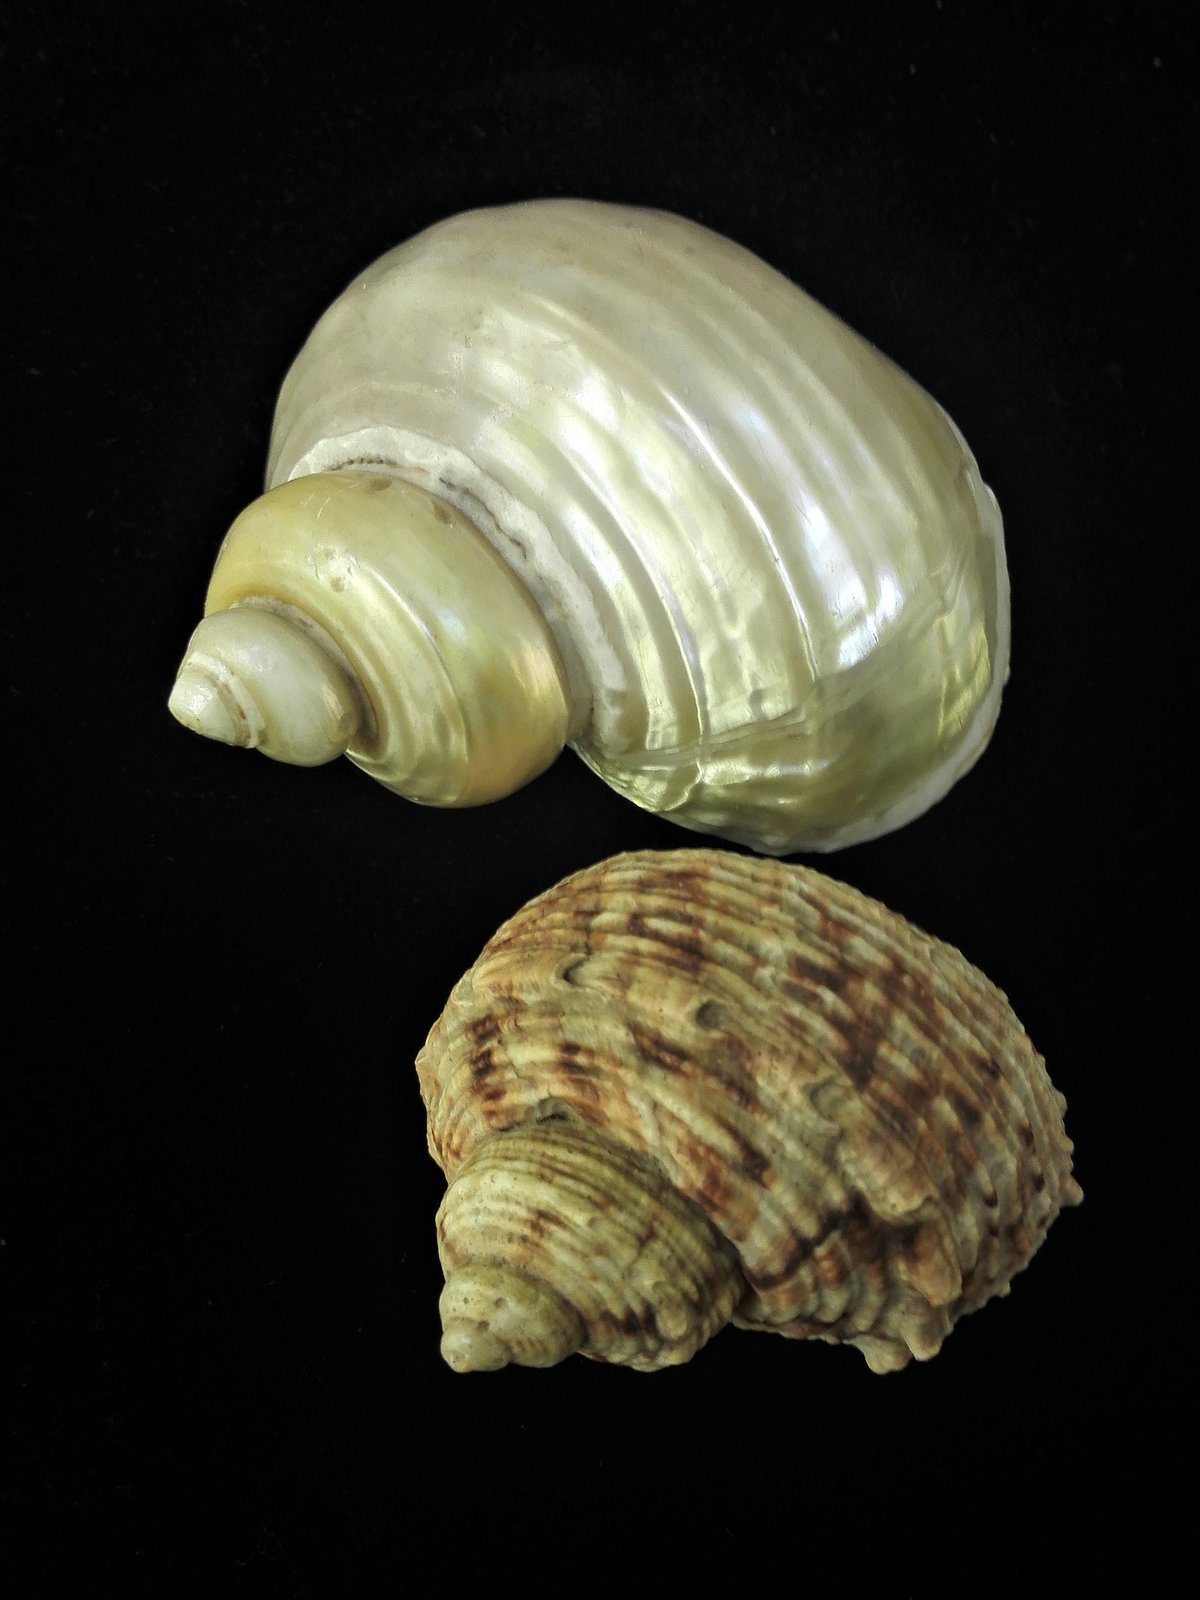 Gliemezis “zeltamute” <i>Turbo chrysostomus</i>, augšā – noslīpēta čaula, apakšā - dabīga čaula. Slīpējumā atklājas balts perlamutrs ar viegli zeltainu nokrāsu.